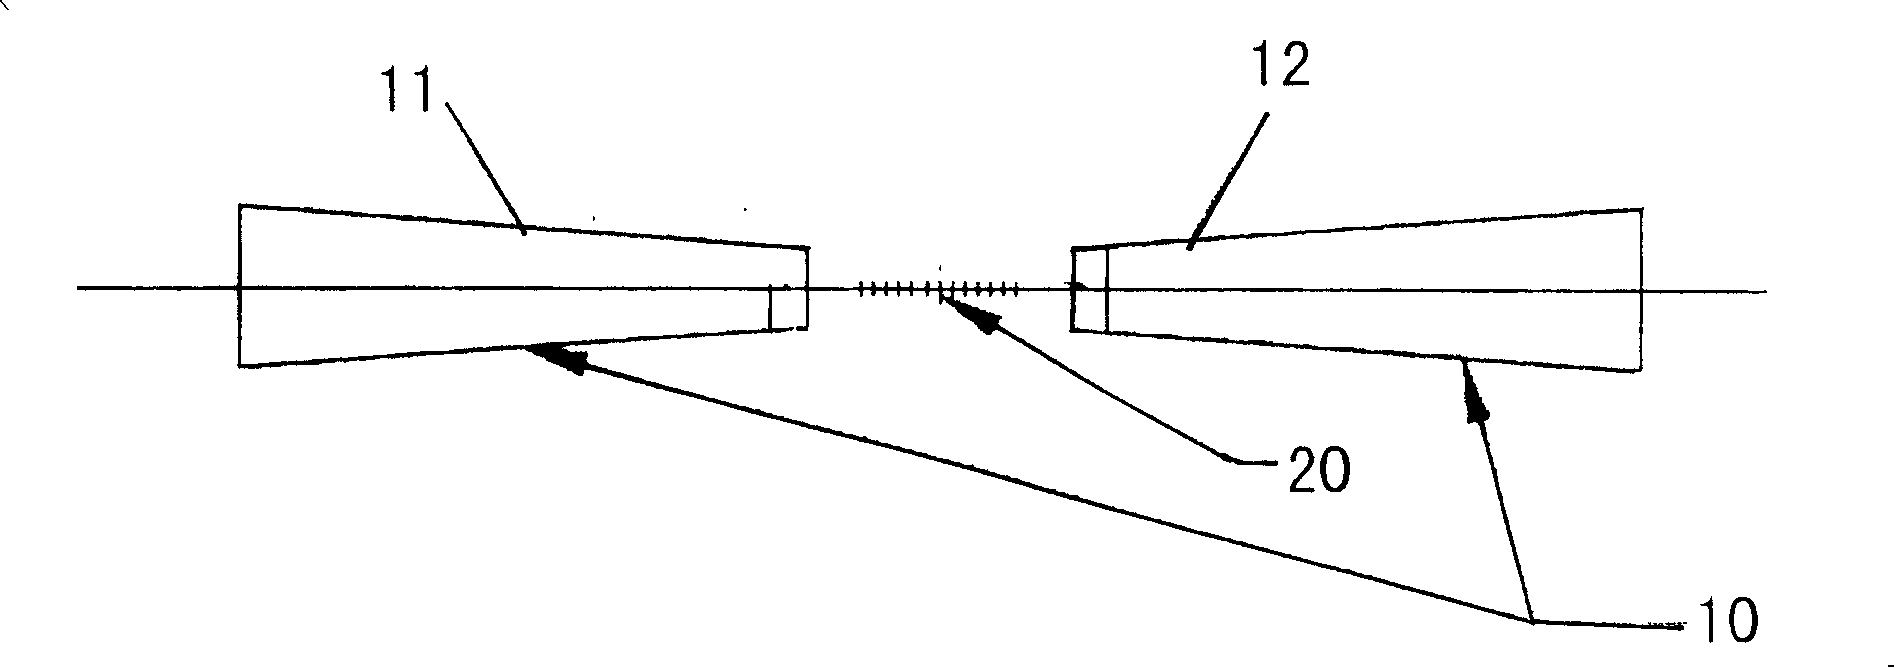 Sensitization structure for optical fiber grating sensor